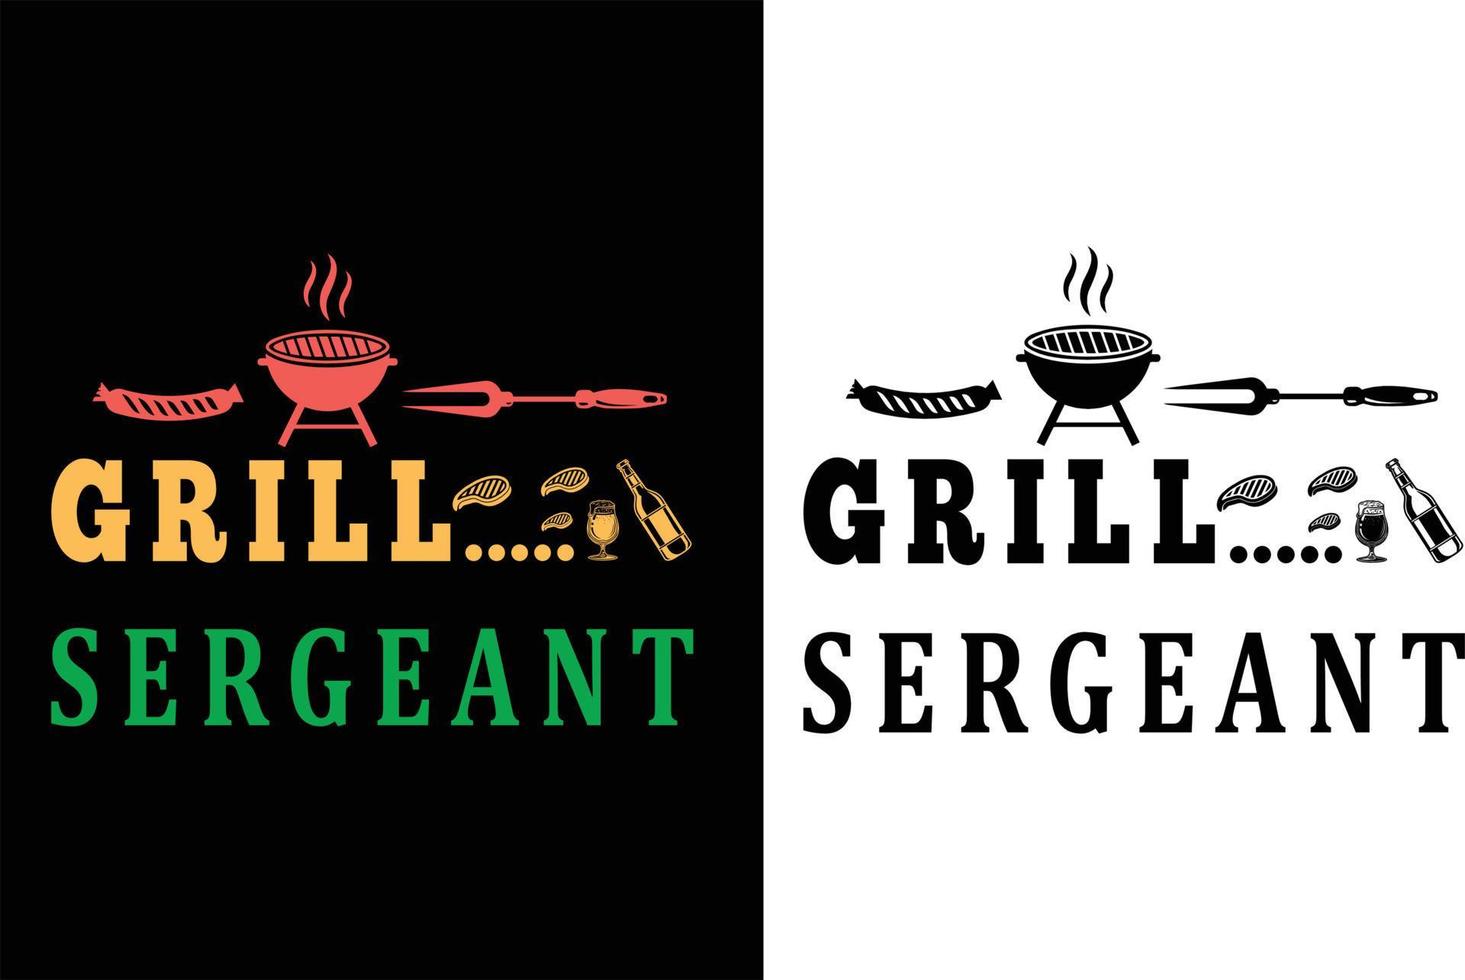 Grill sergeant t shirt design vector